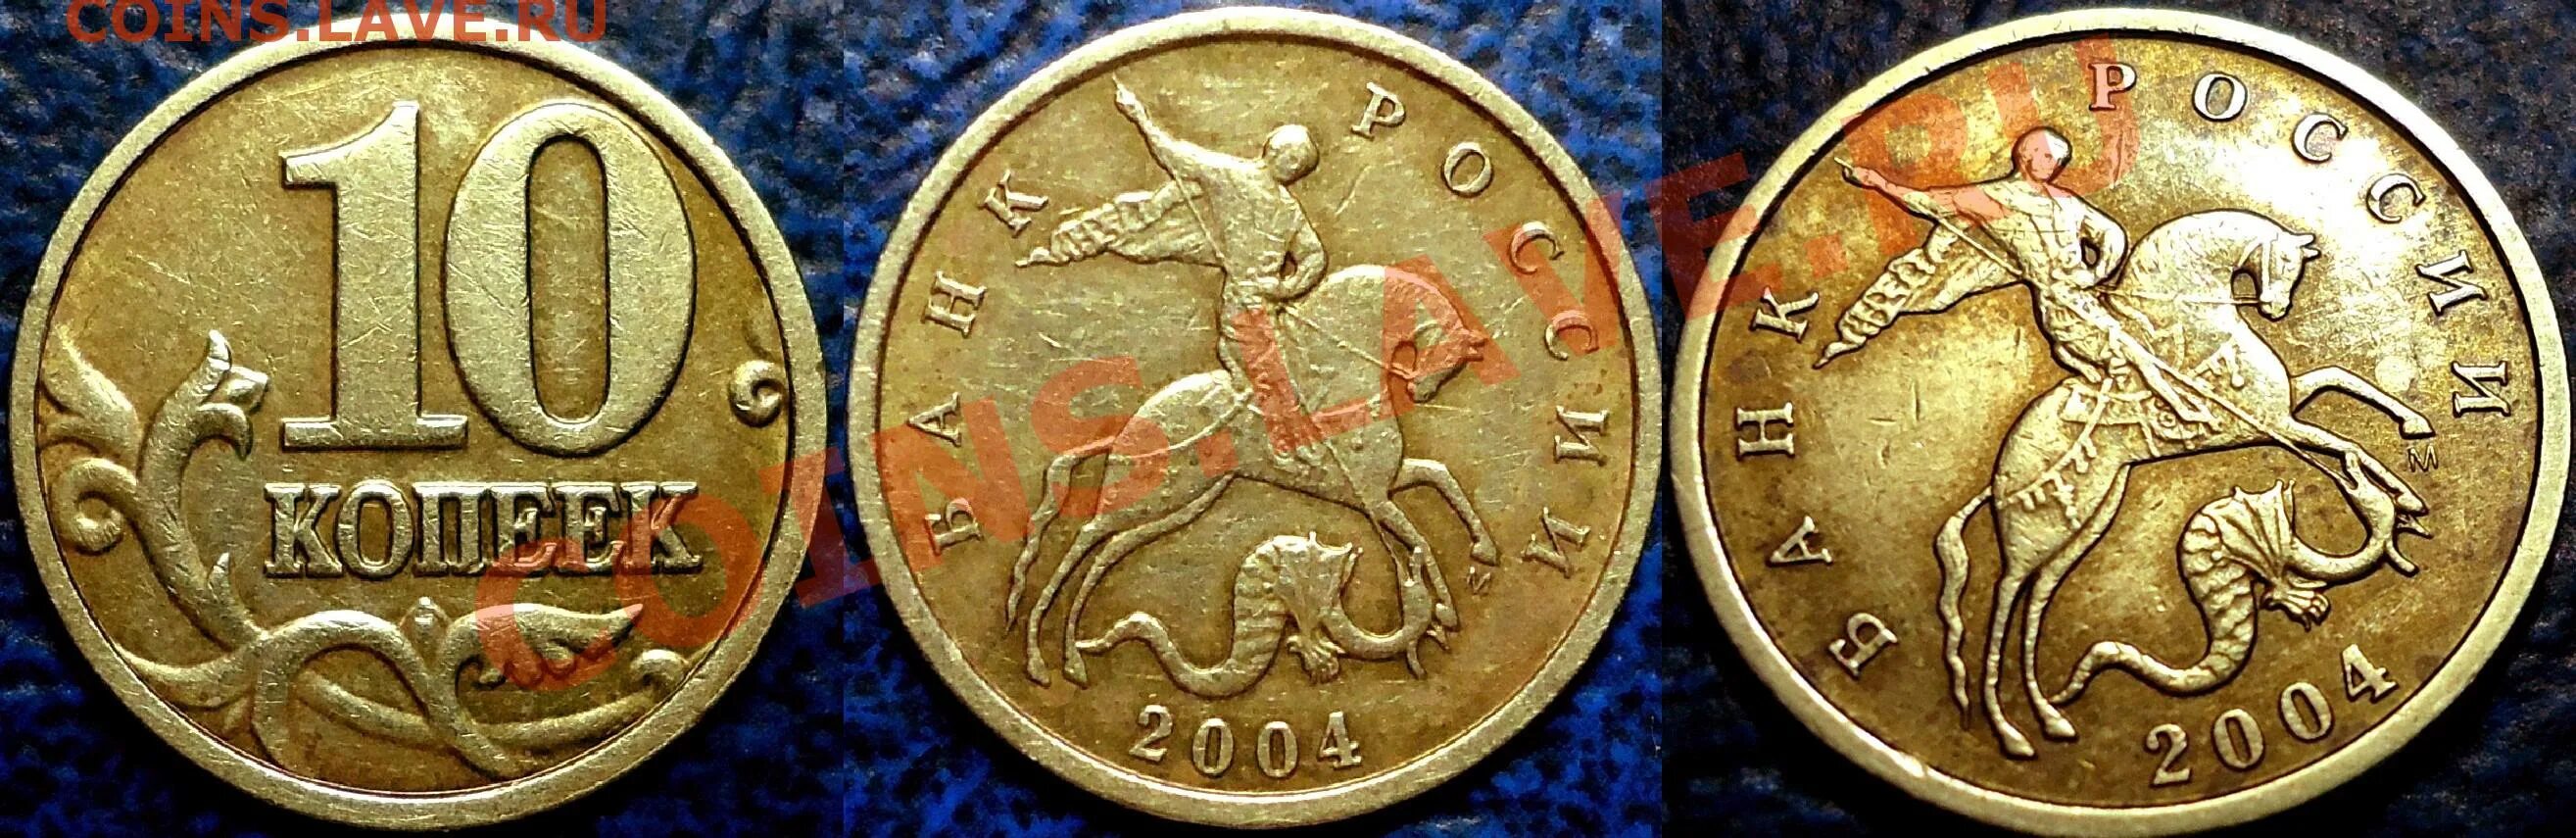 Монета 10 копеек 2004 СП. 5 Копеек 2004 года. Редкие монеты России 1 копеек 2004 года?. 10 Копеек 2004 м шт.1.3 а2. 50 копеек 2004